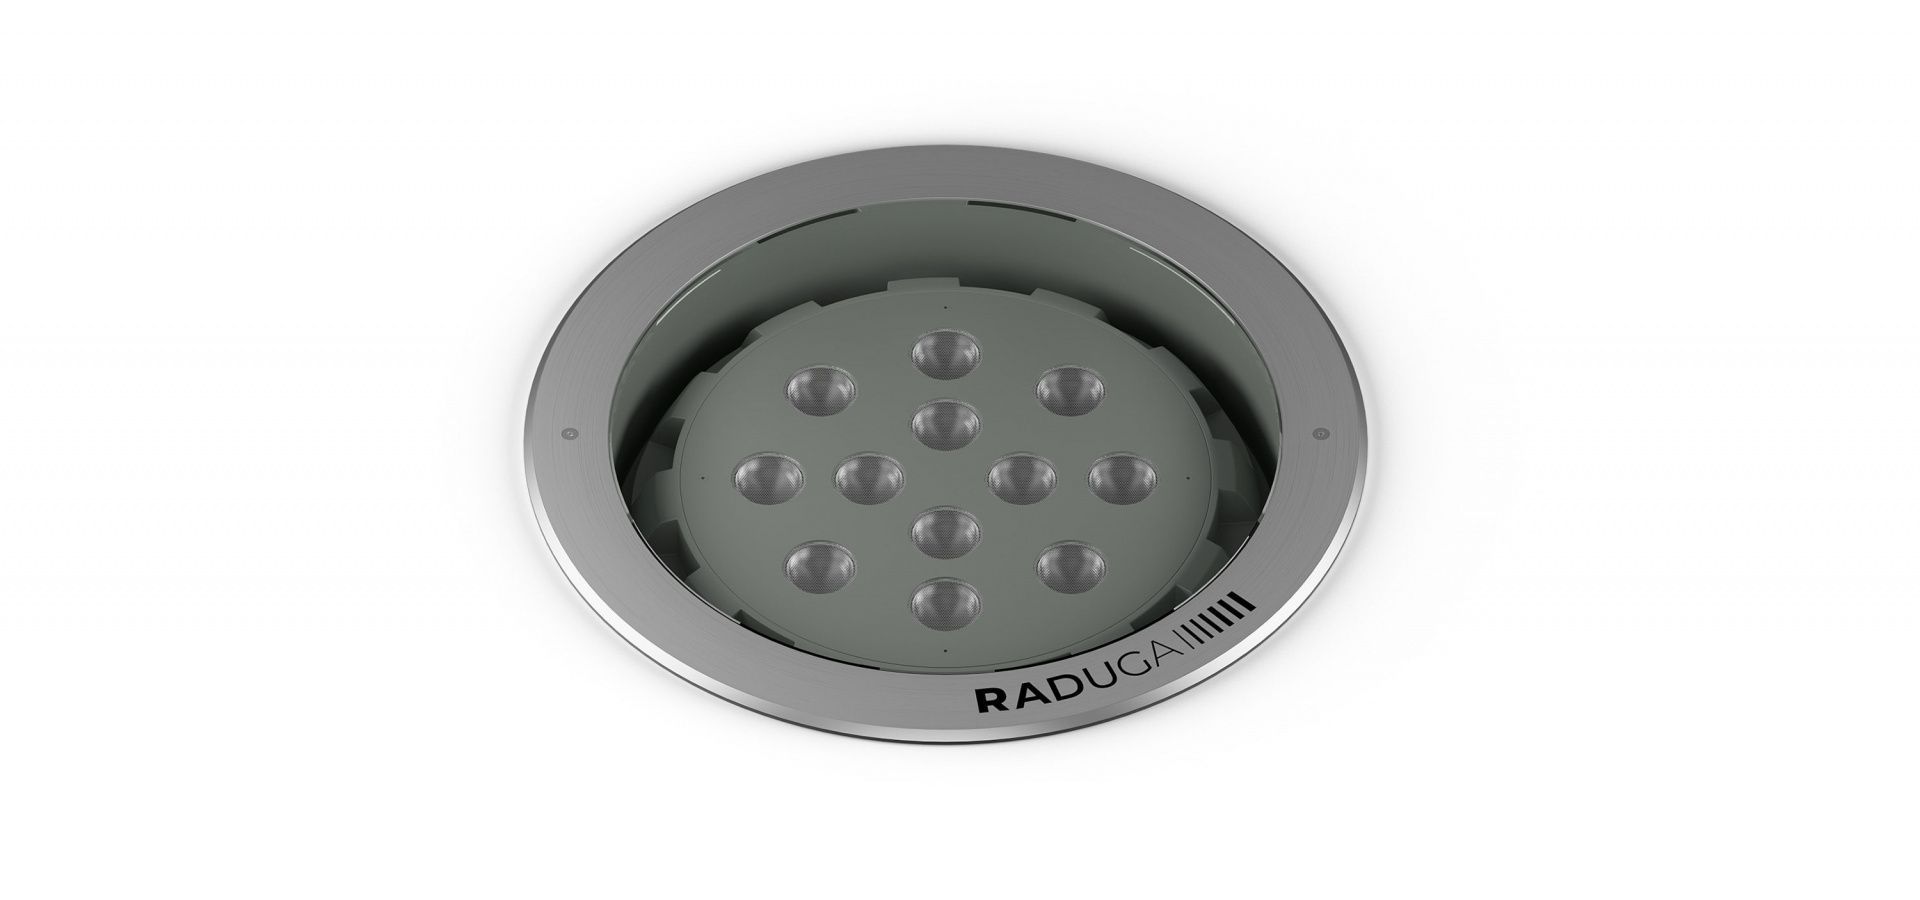 Купить архитектурный грунтовый светильник INTERRA RADUGA на сайте производителя. - Купить грунтовые светодиодные светильники RADUGA.